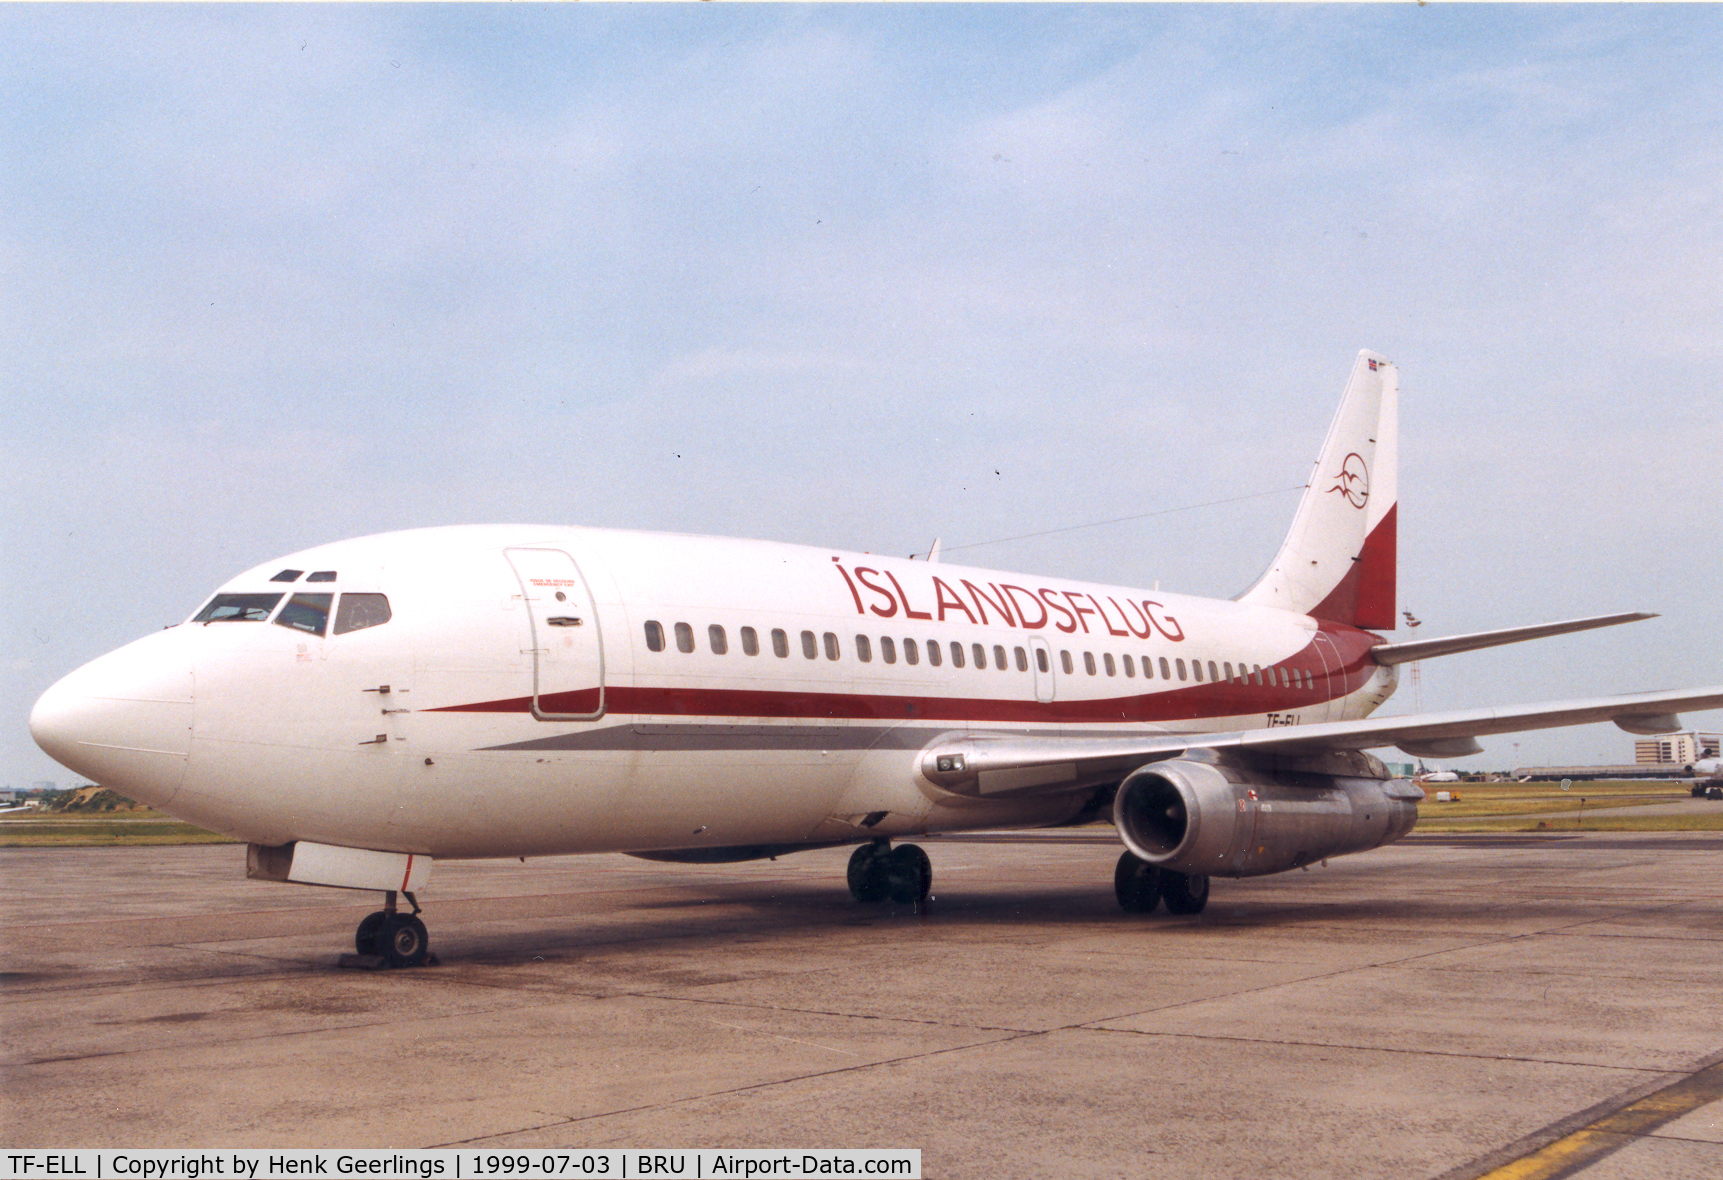 TF-ELL, 1969 Boeing 737-210C C/N 20138, Islandsflug

Operating cargo flights for DHL